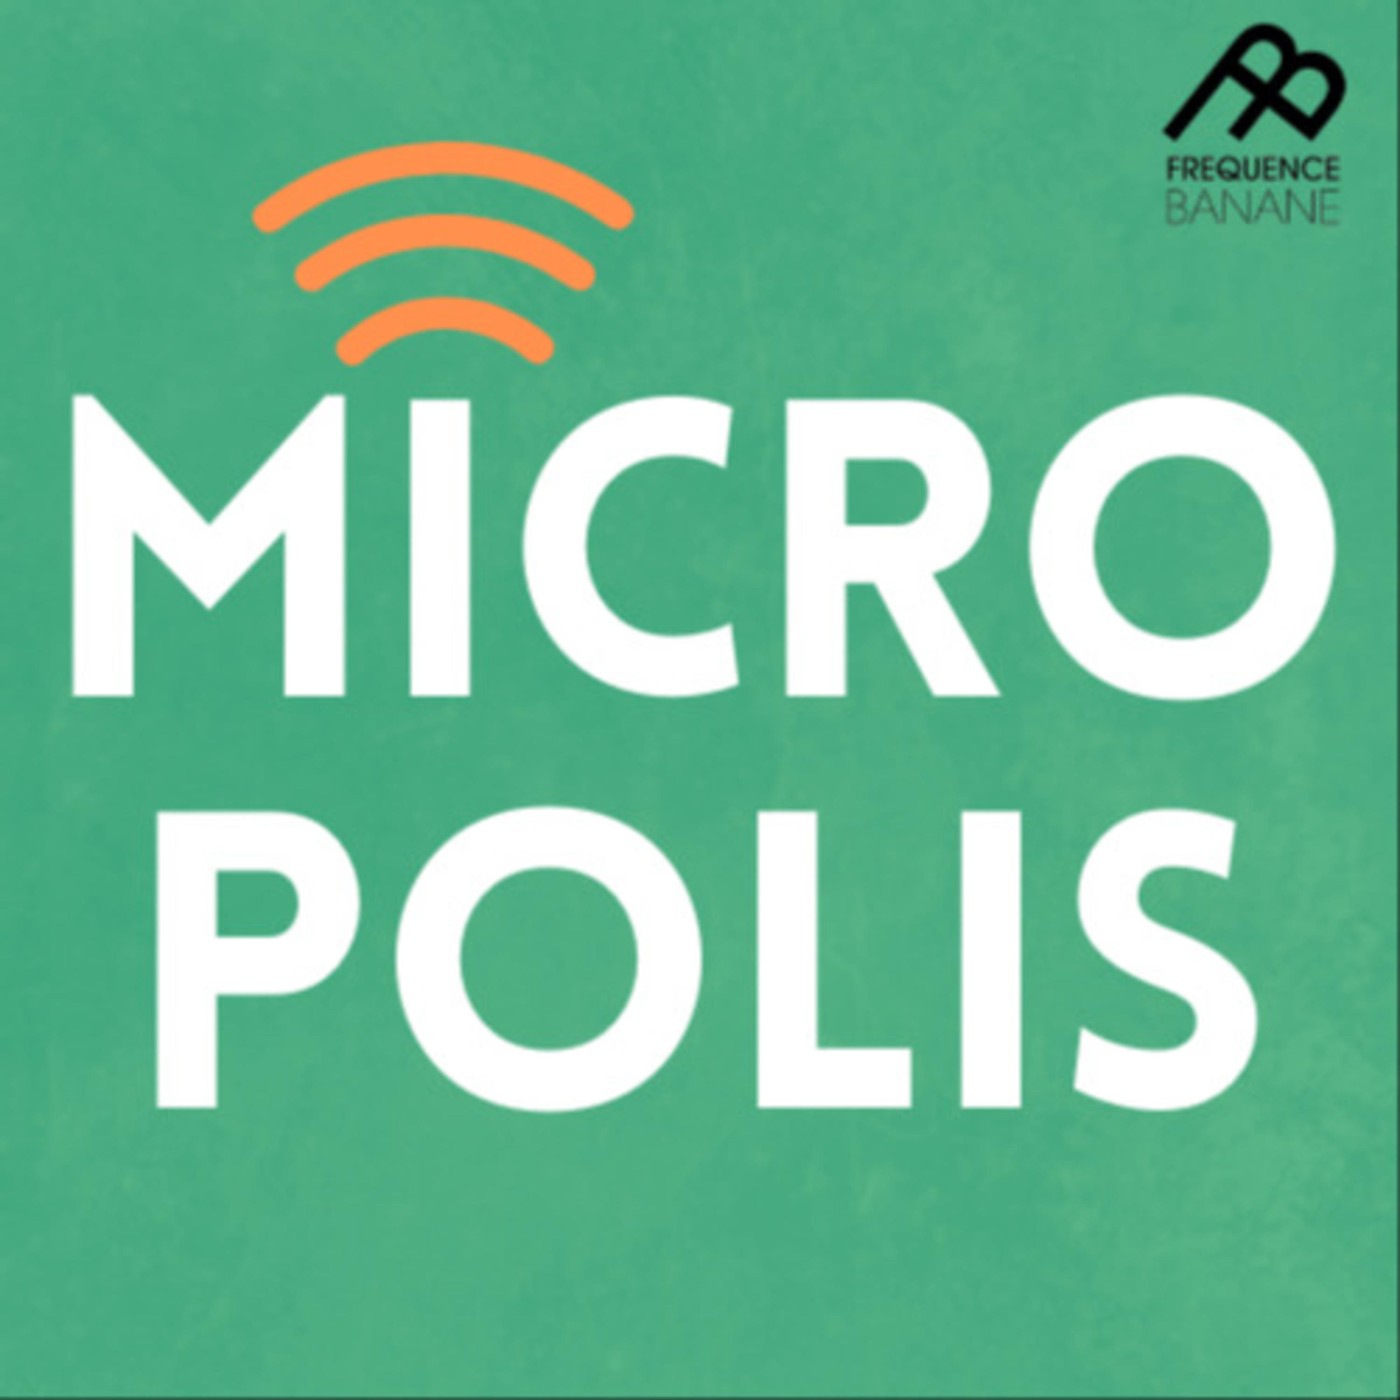 Micropolis du 19/02/20 - Les Mercures - Les dessins animés